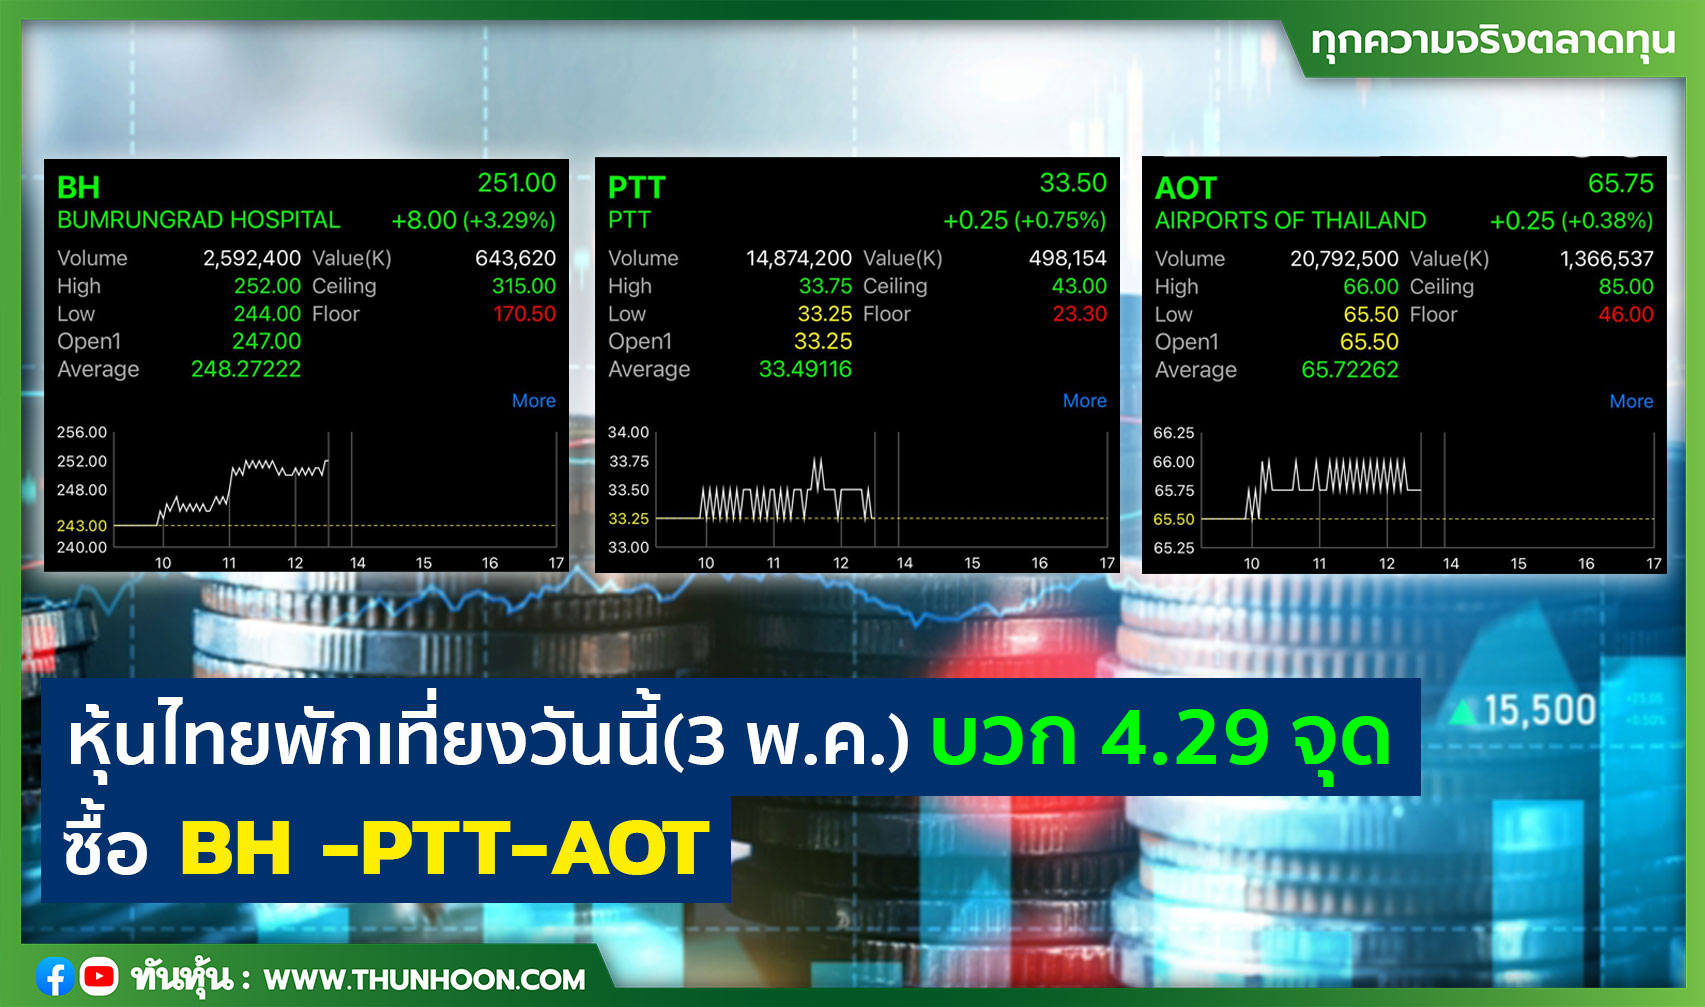 หุ้นไทยพักเที่ยงวันนี้(3 พ.ค.) บวก 4.29 จุด ซื้อ BH -PTT-AOT